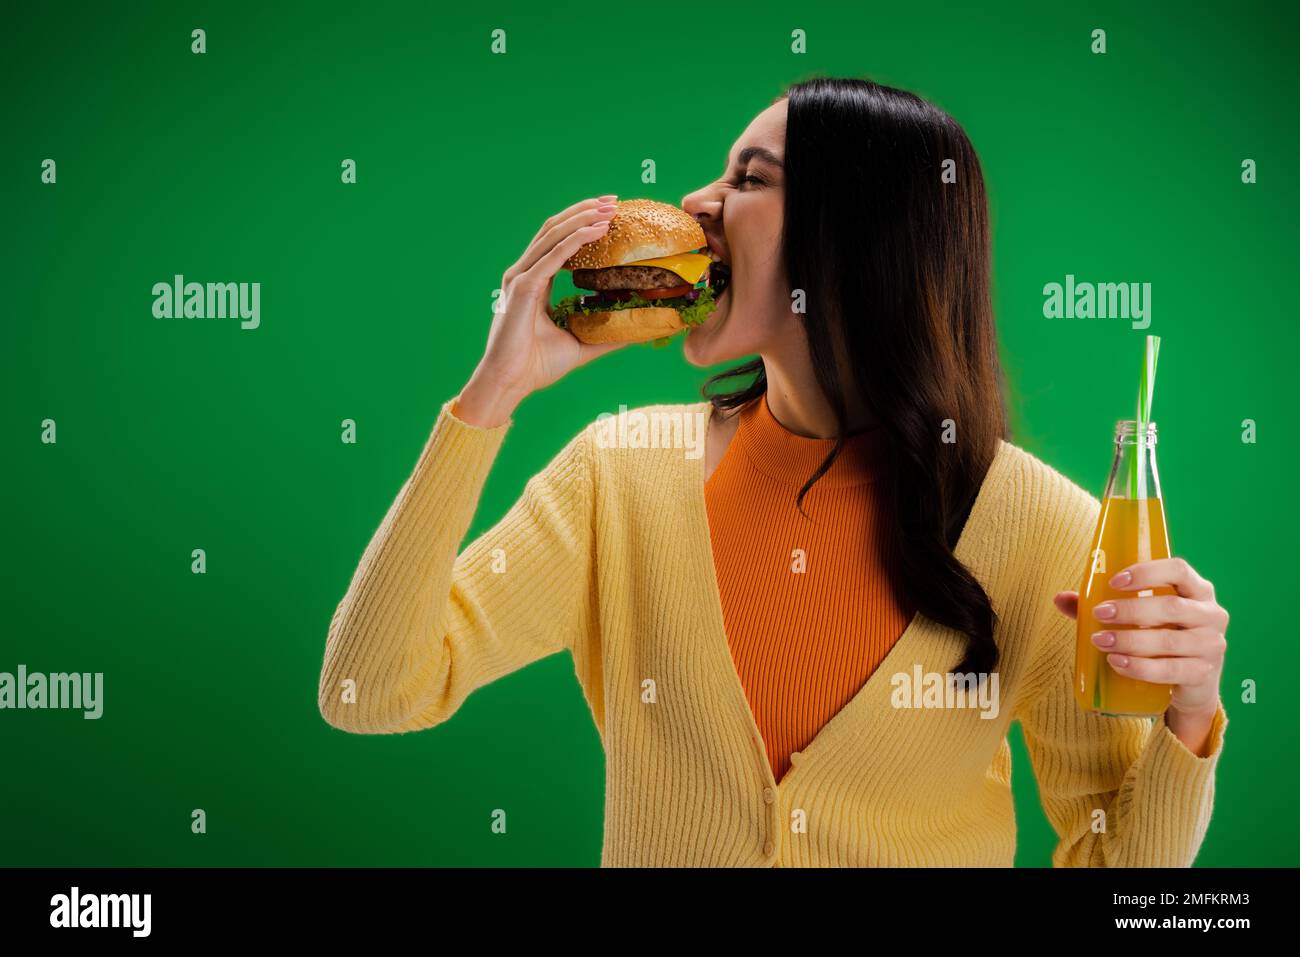 donna brunette tenere una bottiglia di limonata fresca e mangiare gustoso hamburger isolato sul verde, immagine stock Foto Stock